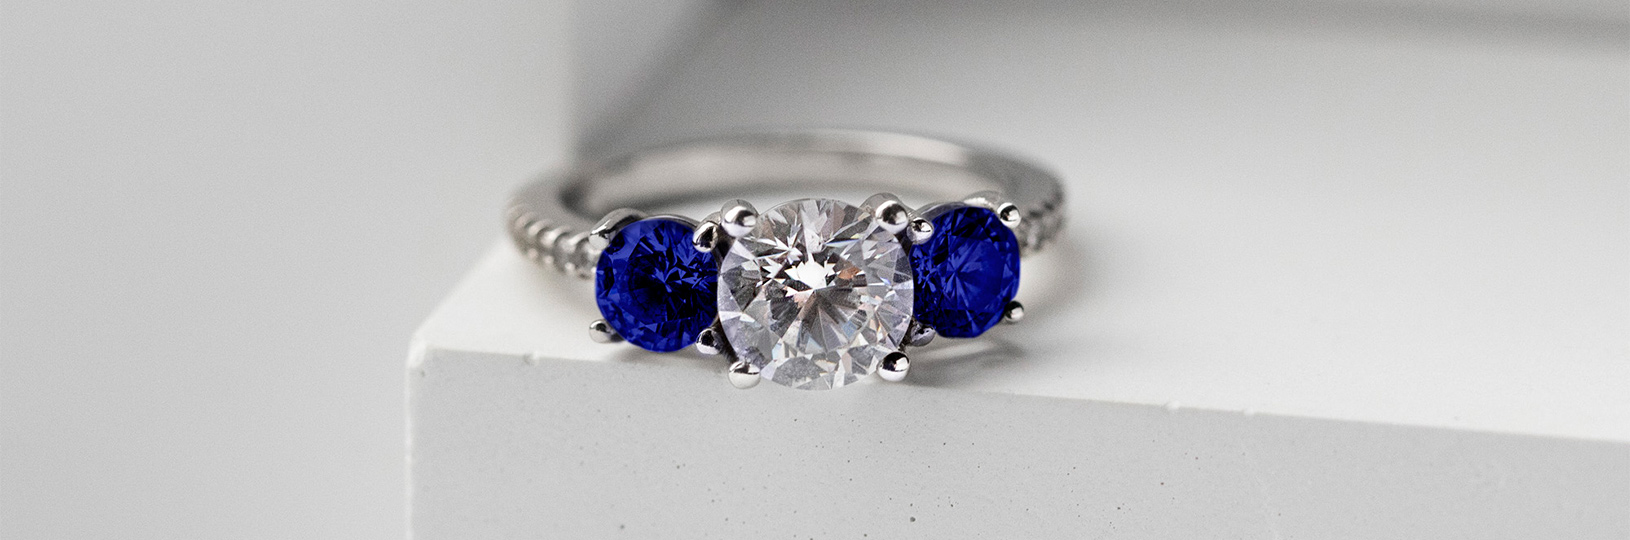 Three stone sapphire engagement ring.